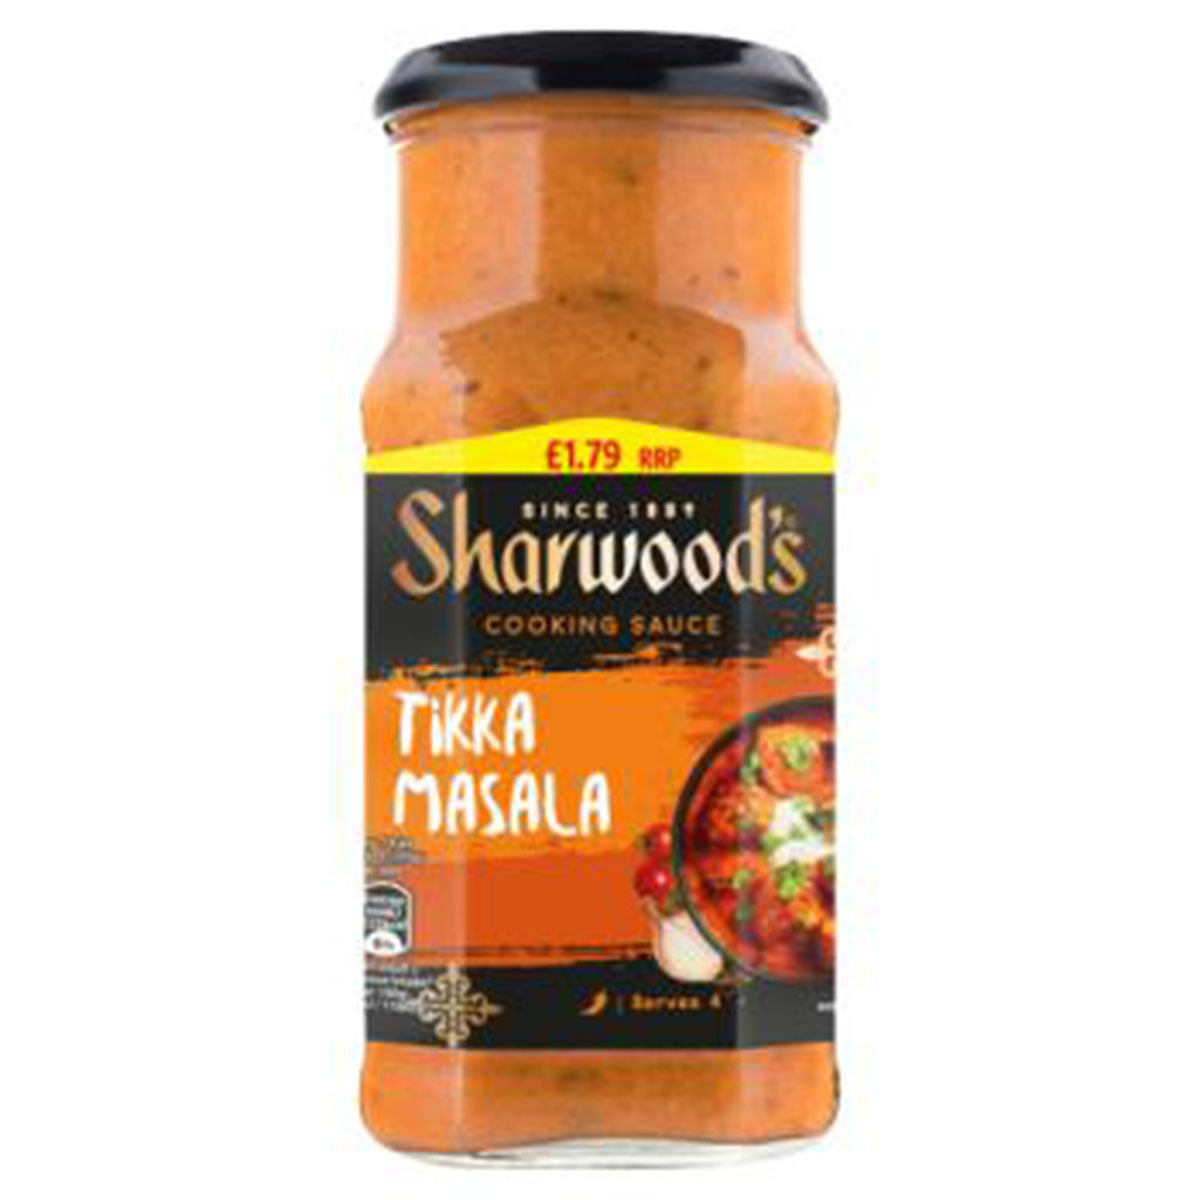 Sharwood's - Tikka Masala - 420g - Continental Food Store